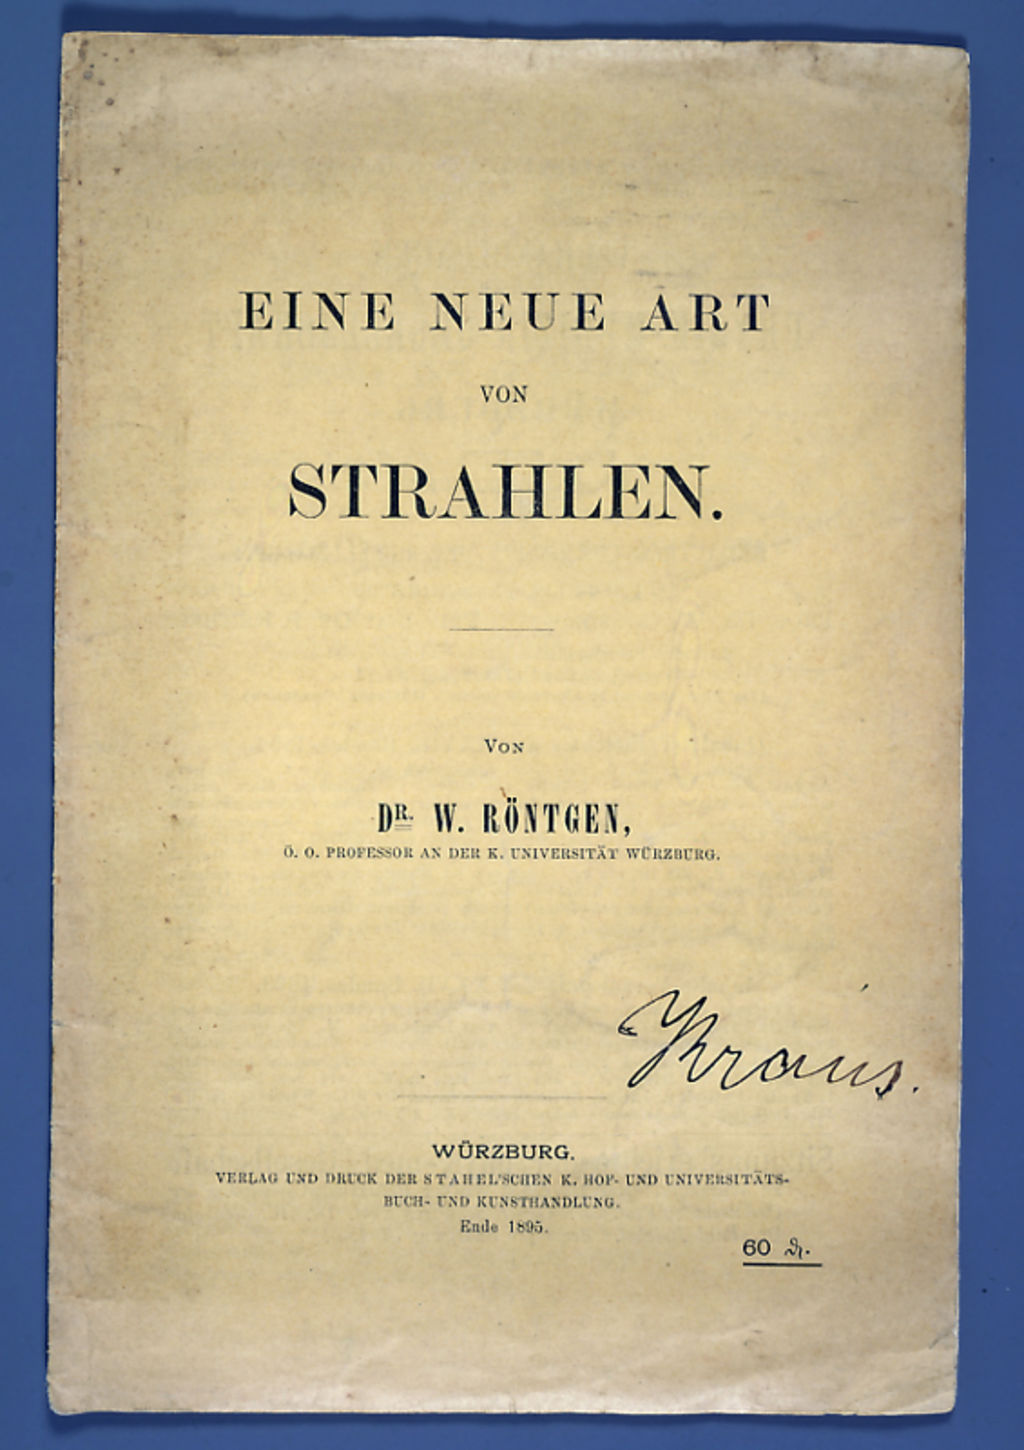 Buch: Röntgen, Wilhelm Conrad "Eine neue Art von Strahlen", 1895